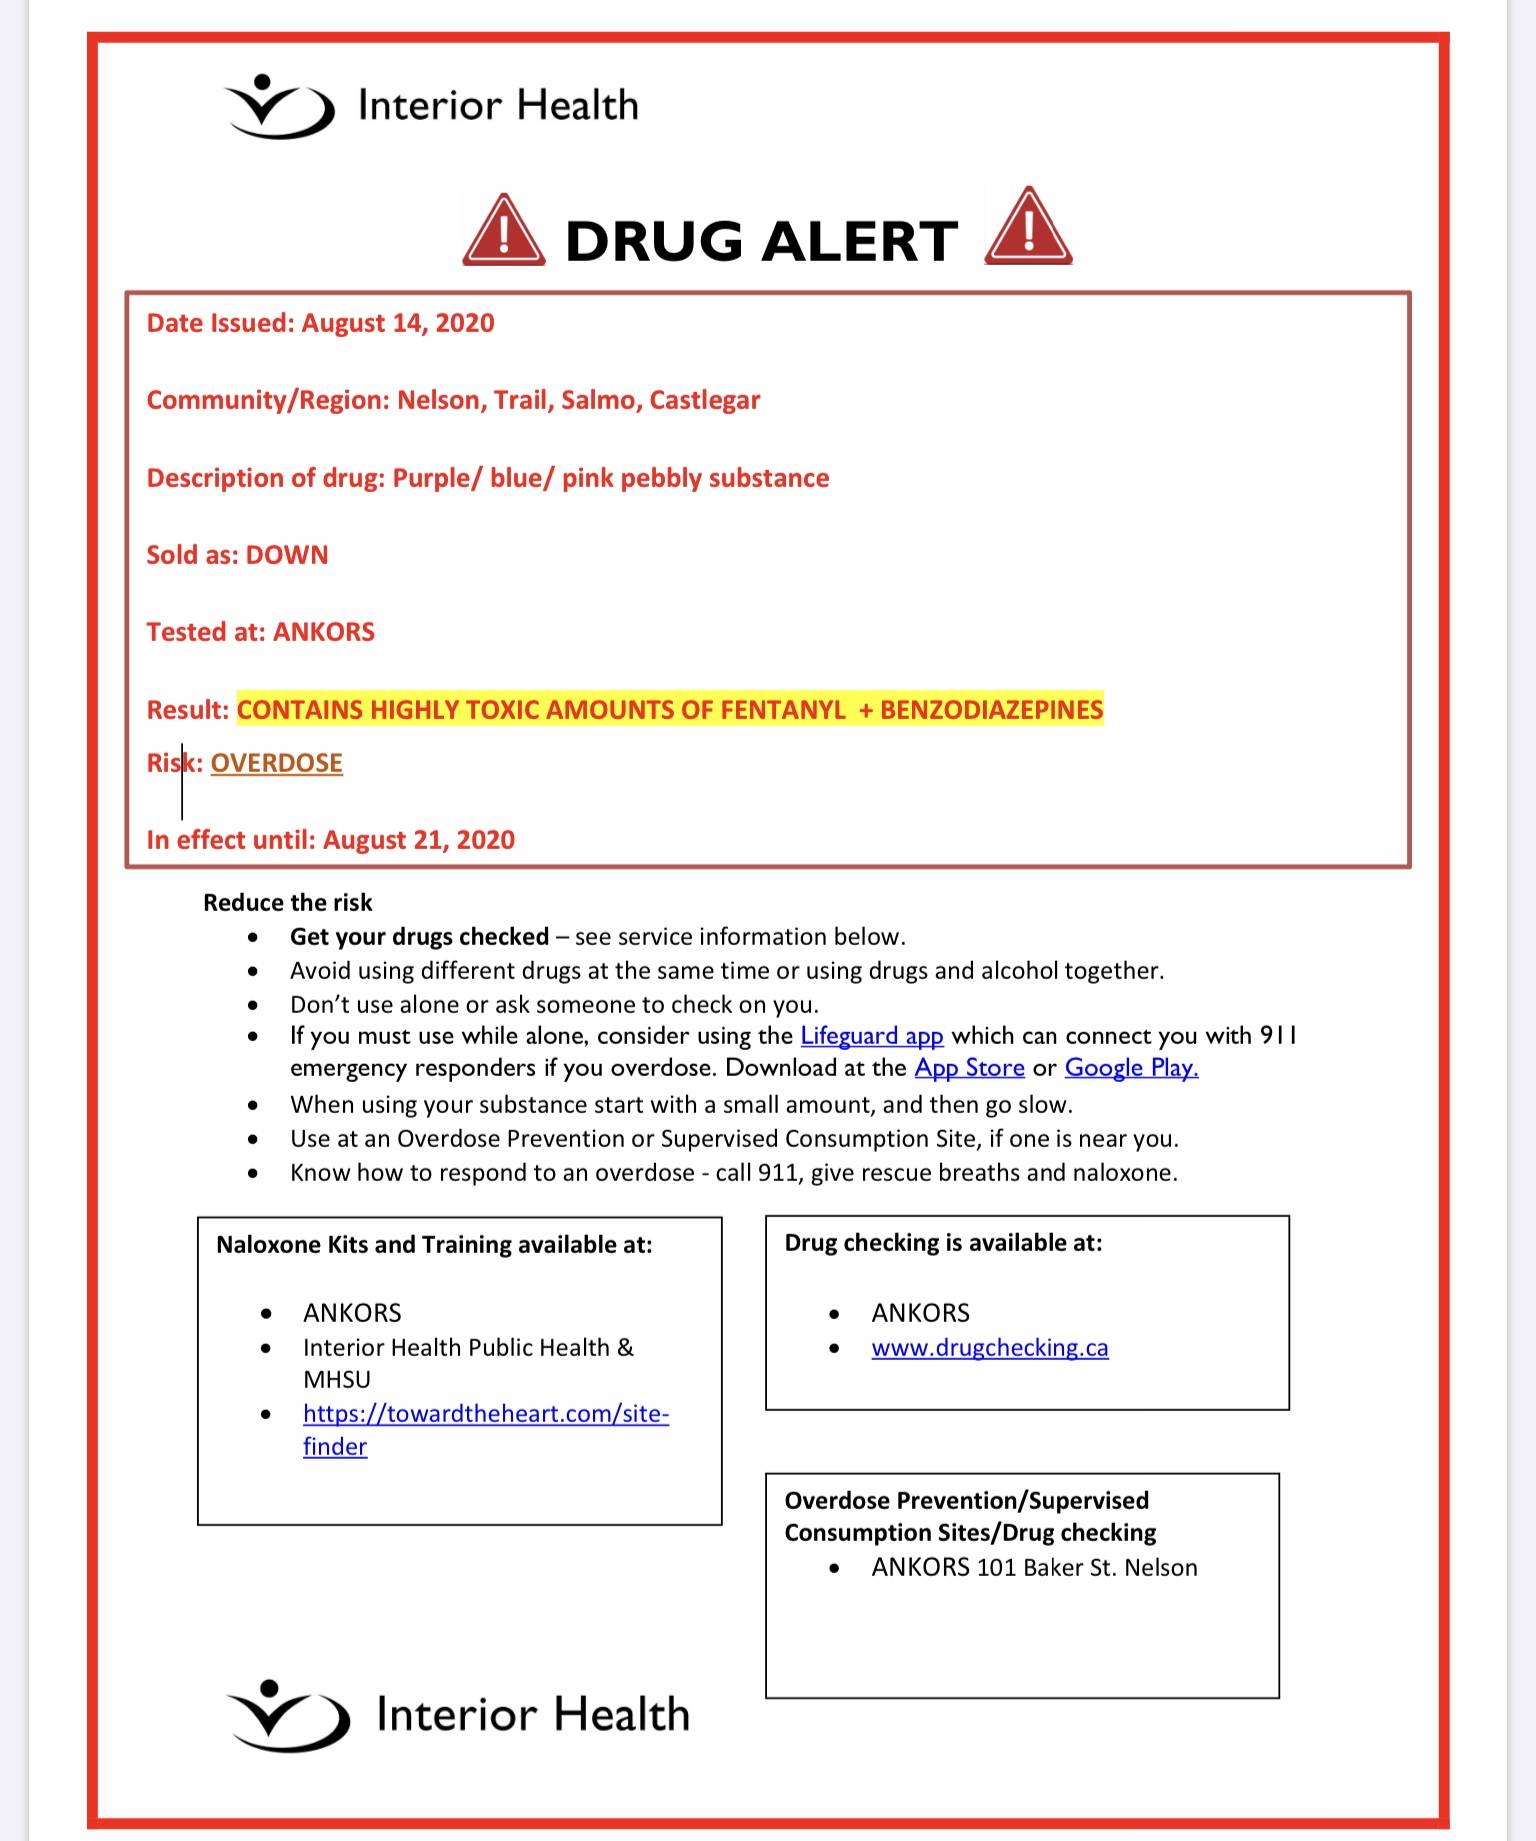 22425346_web1_copy_200818-TDT-IH-drug-alert_2